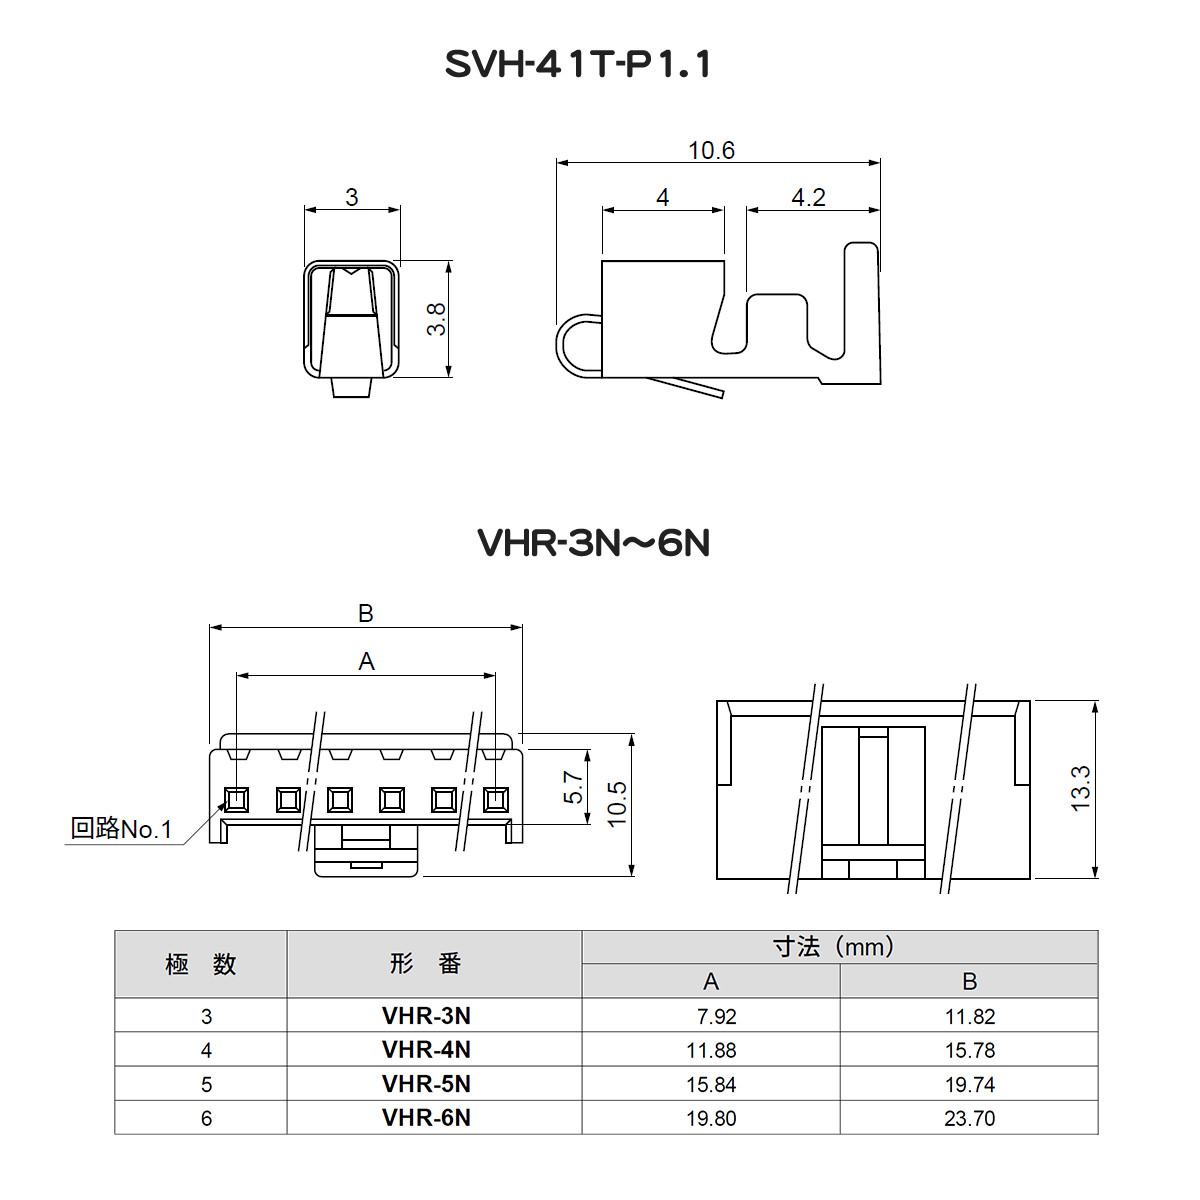 【日圧】 基板対電線接続コネクタ VHRシリーズ Nタイプ用コンタクト 【SVH-41T-P1.1】